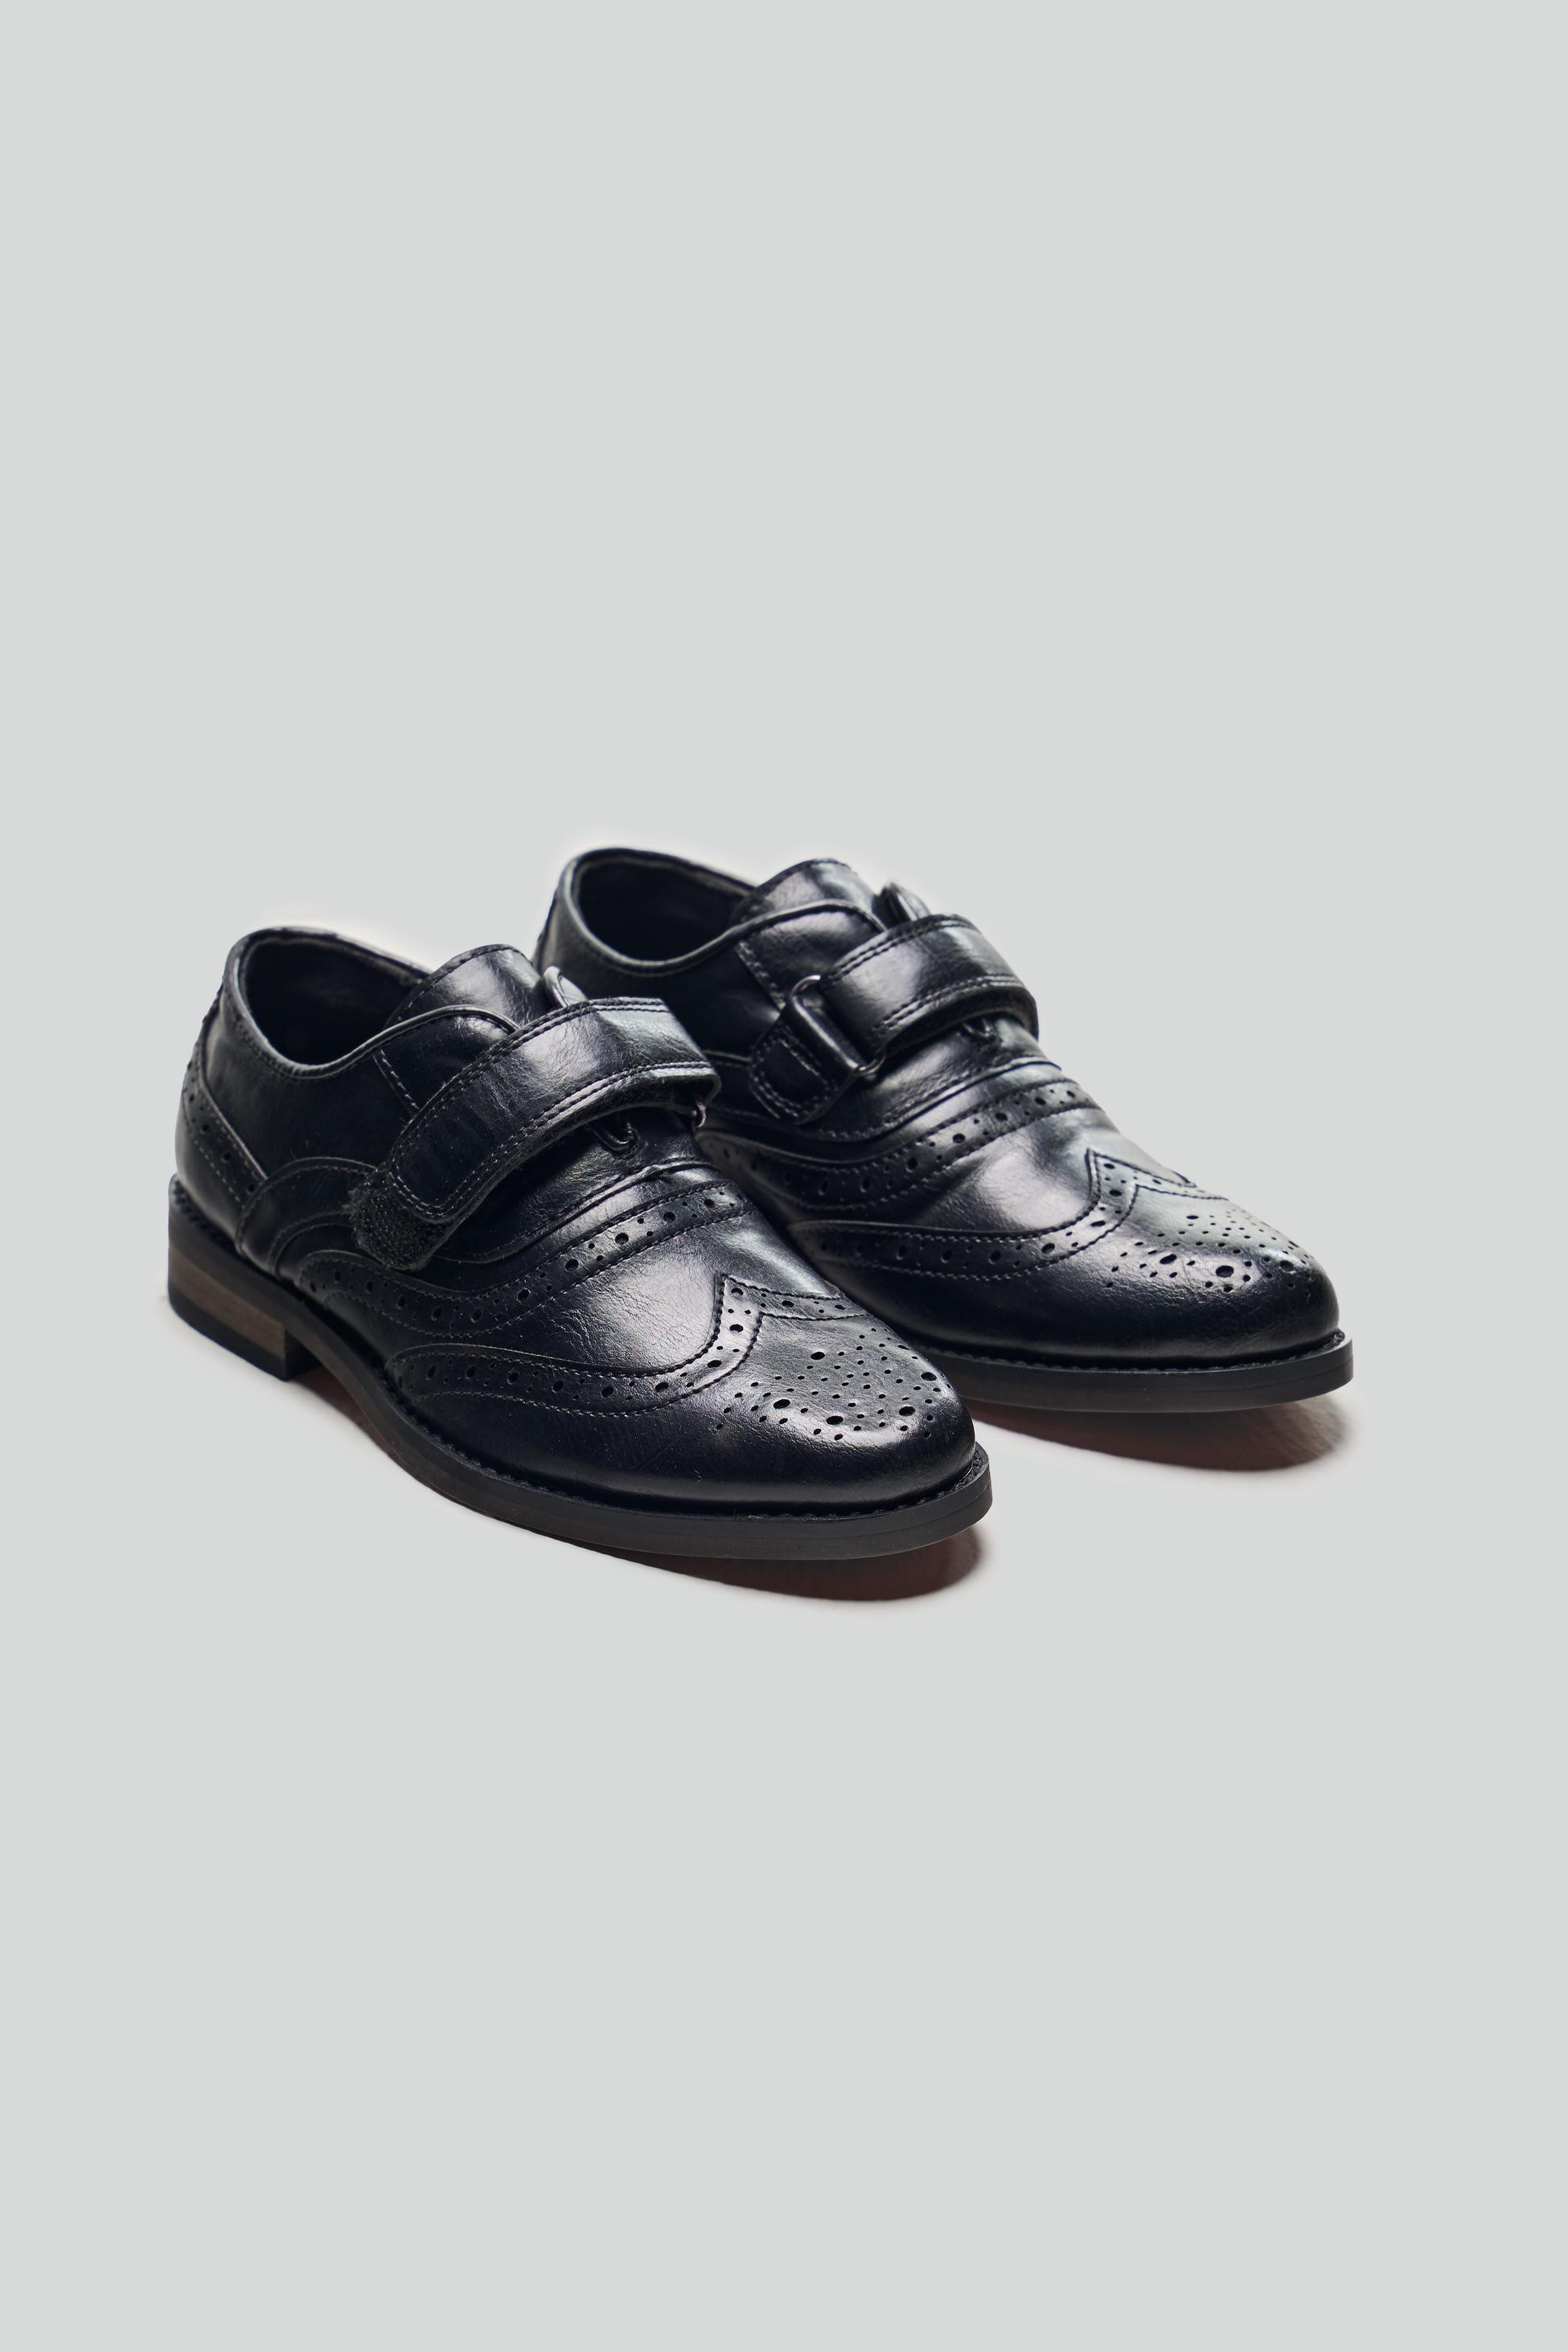 Chaussures Habillées Brogue Oxford à Velcro pour Garçons - RUSSEL - Noir